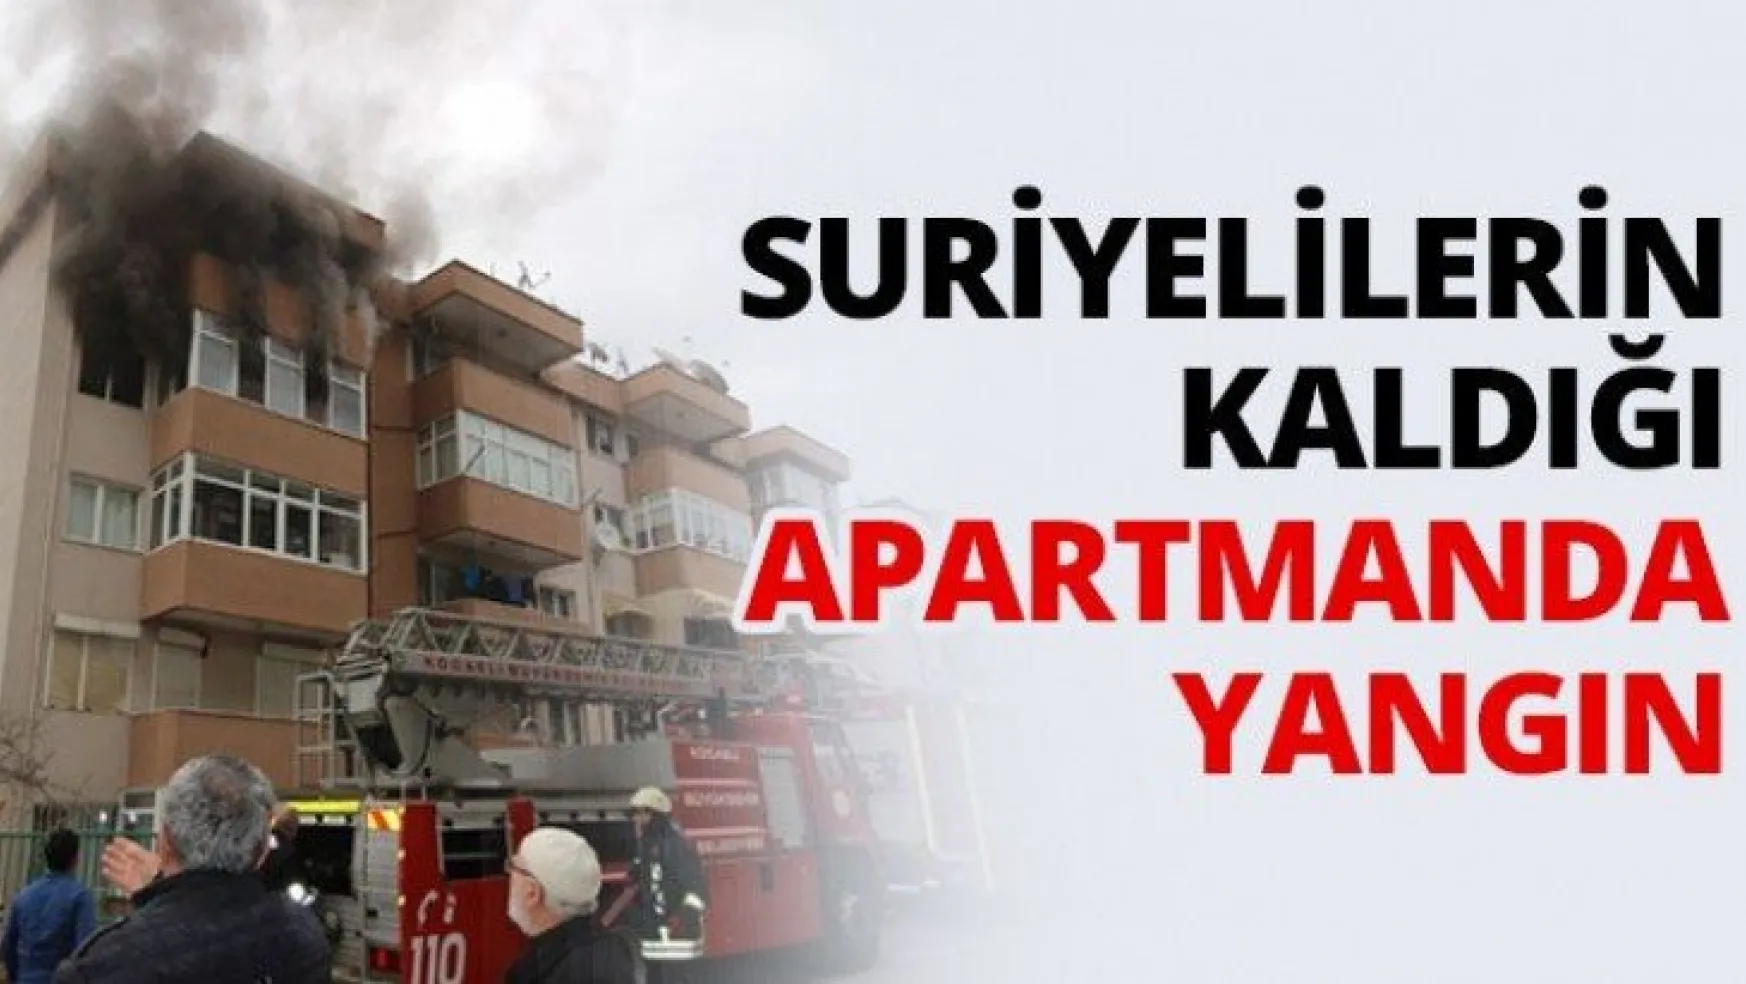 Suriyelilerin kaldığı apartmanda yangın